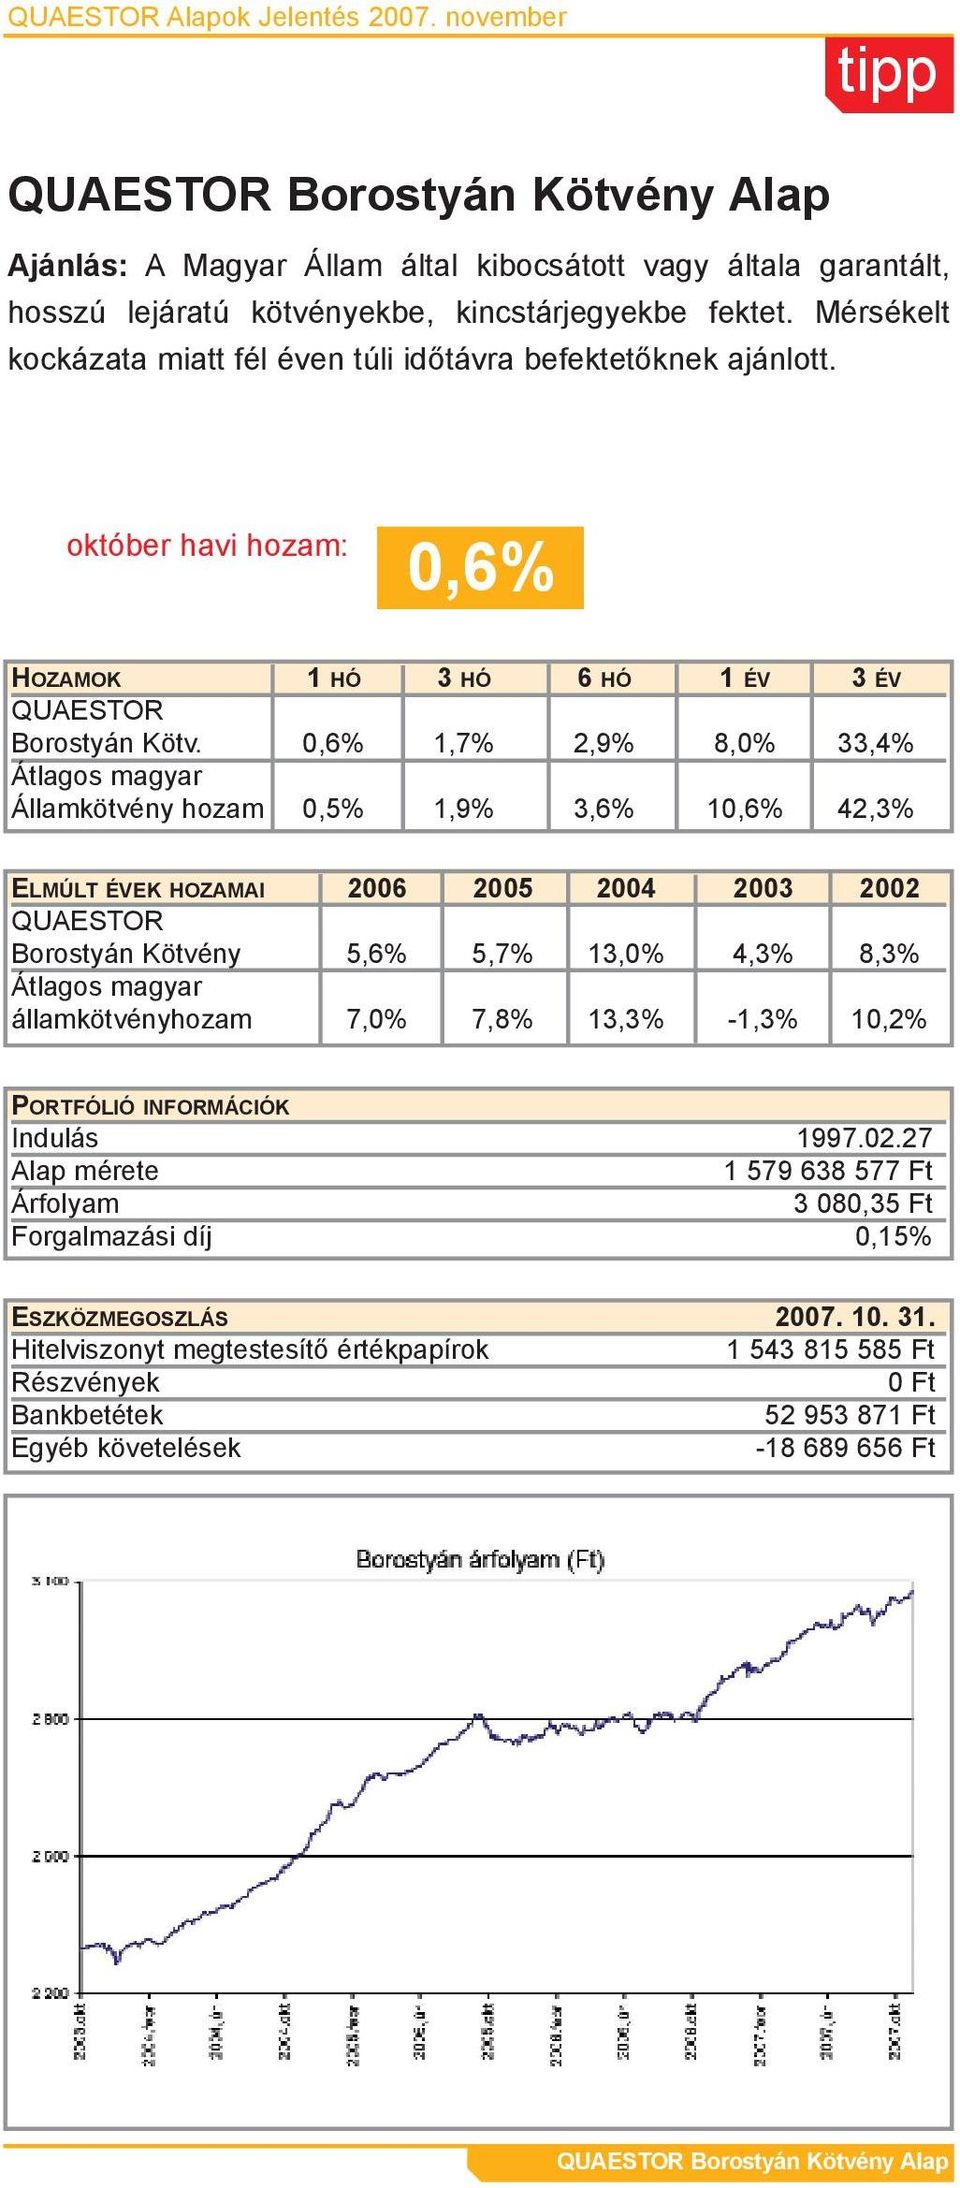 Mérsékelt kockázata miatt fél éven túli idõtávra befektetõknek ajánlott. 0,6% Borostyán Kötv.